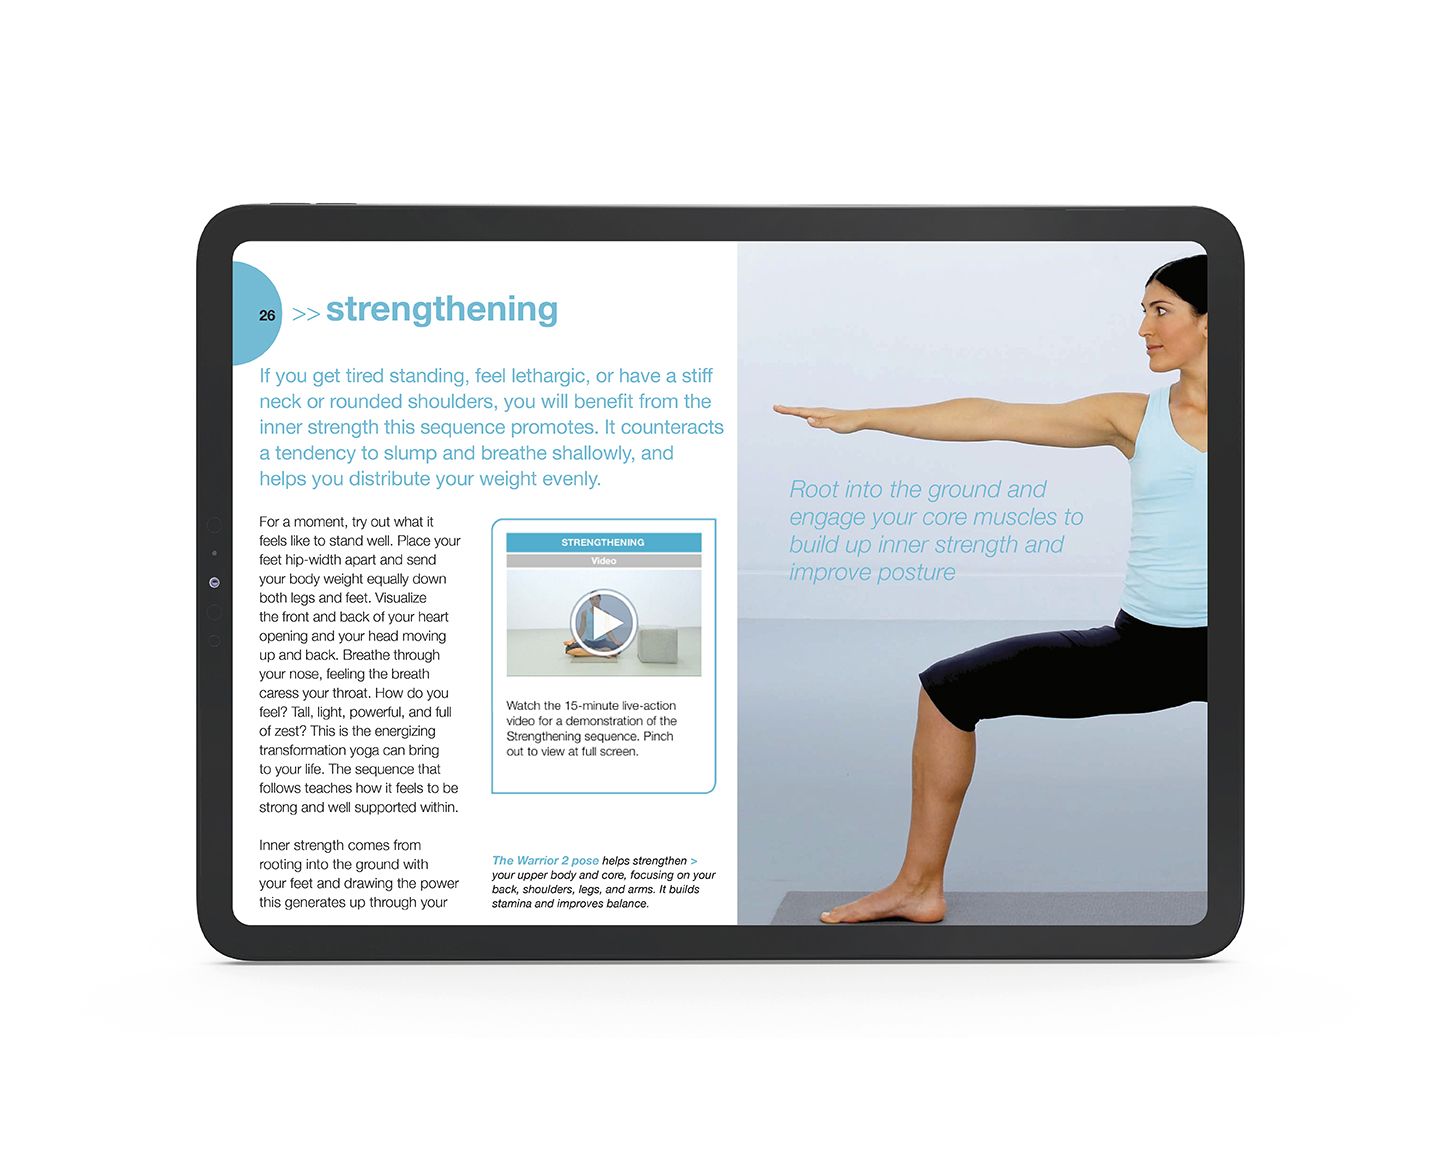 Yoga_e-book_design_by_Designbite_2